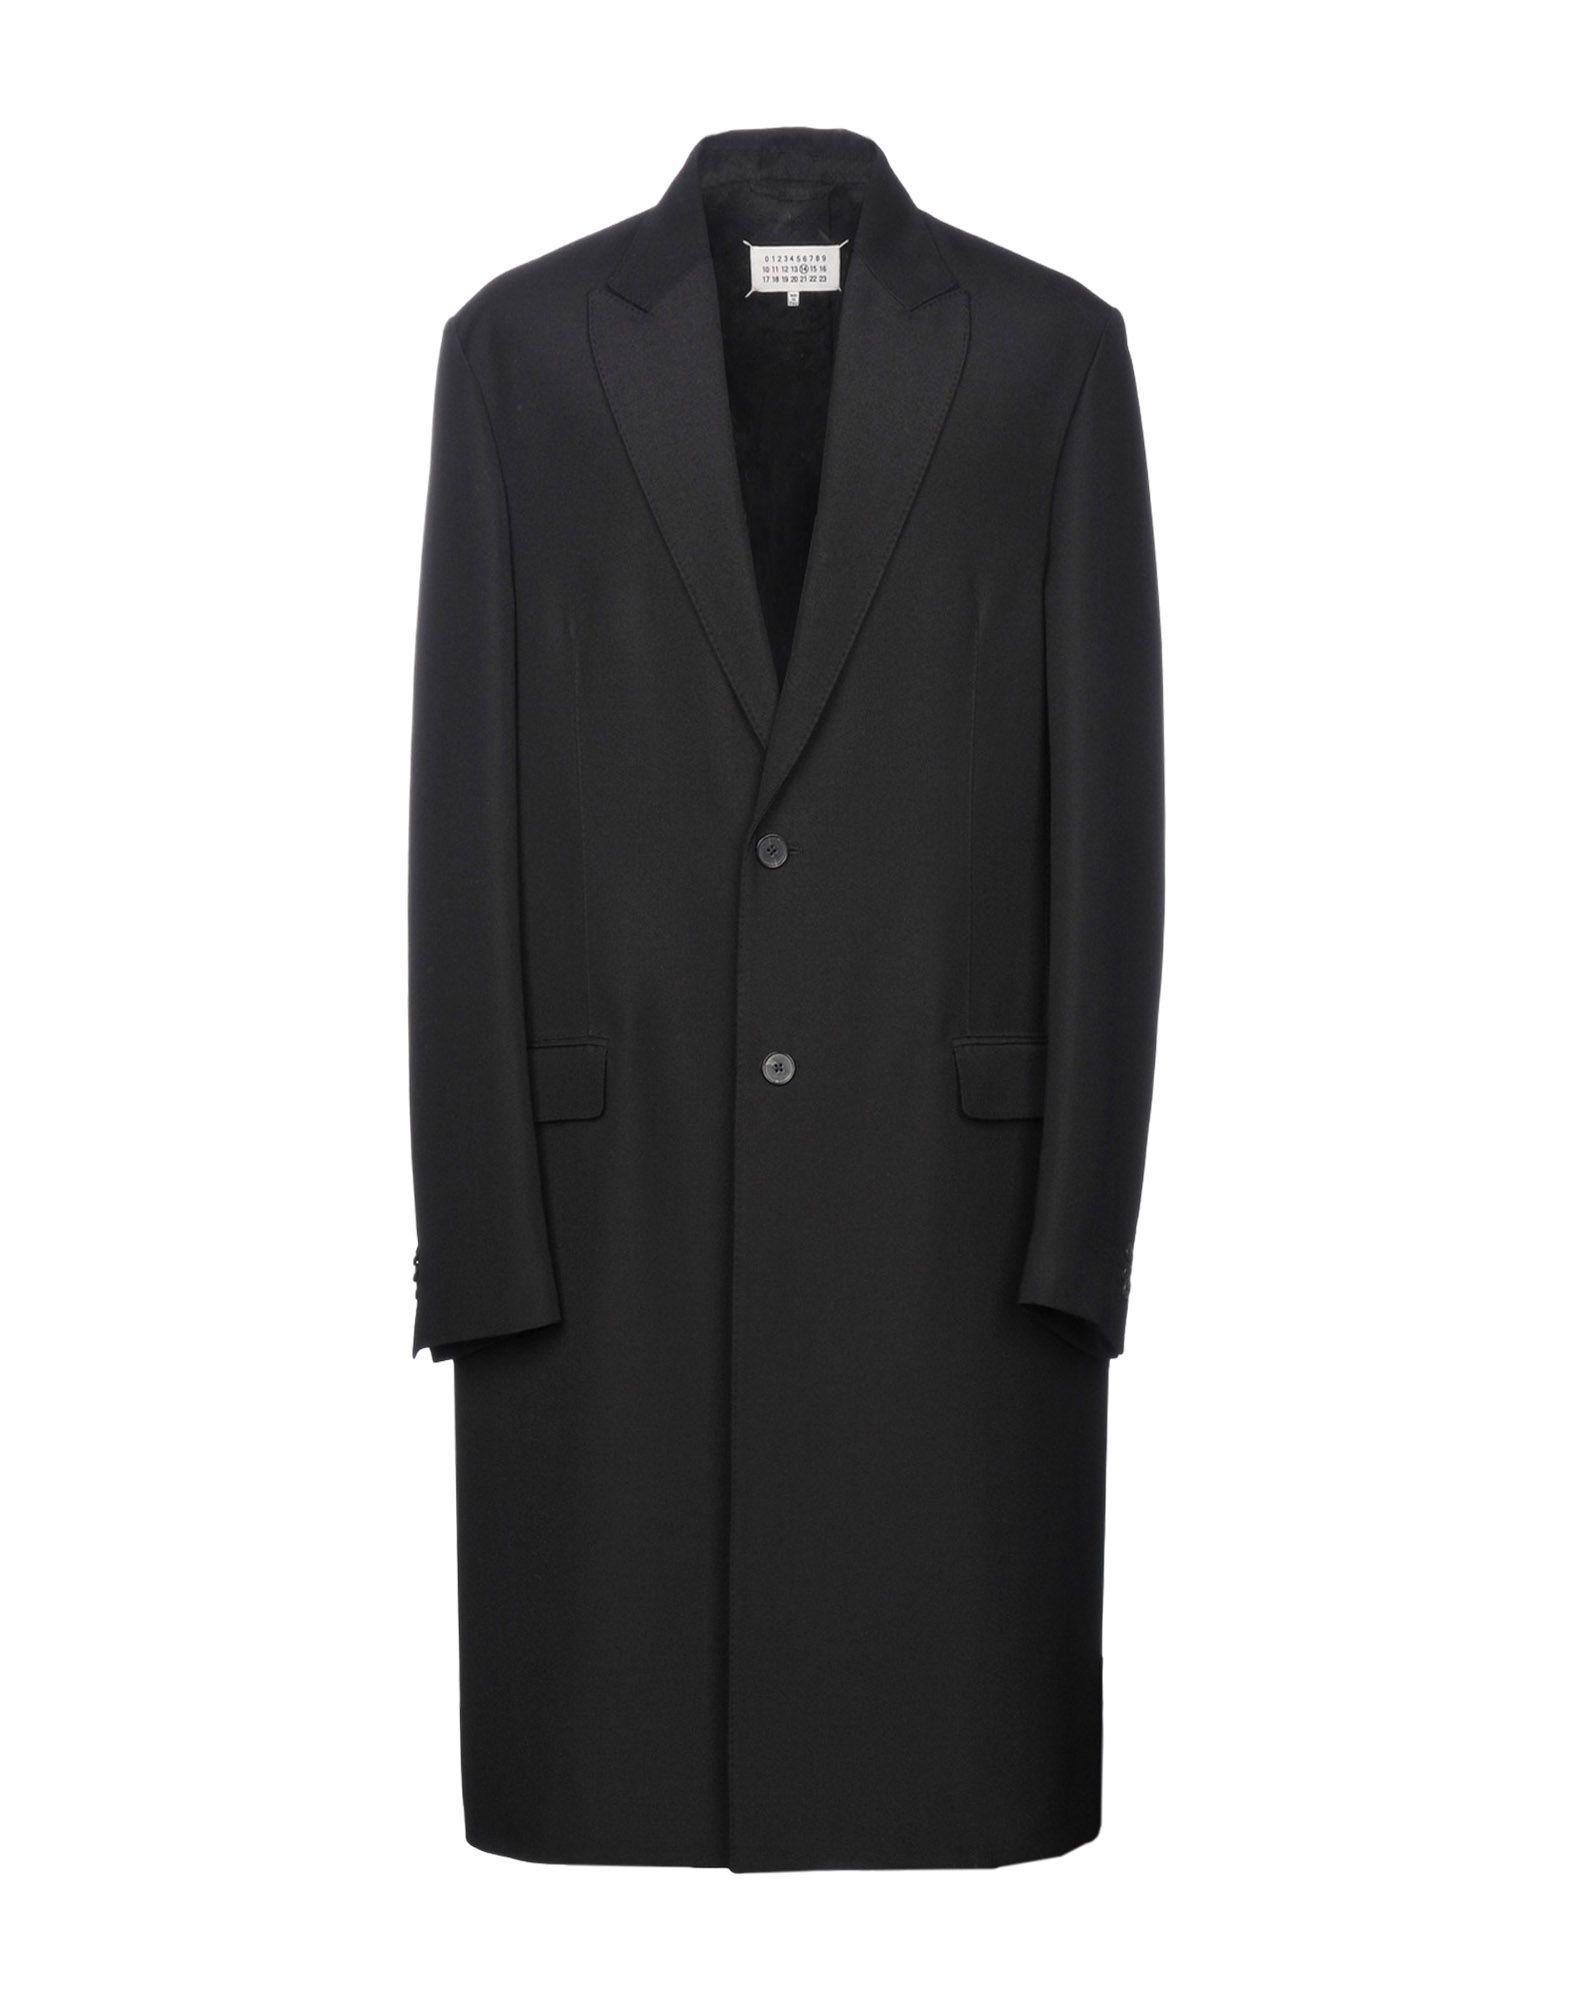 Maison Margiela Wool Coat in Black for Men - Lyst